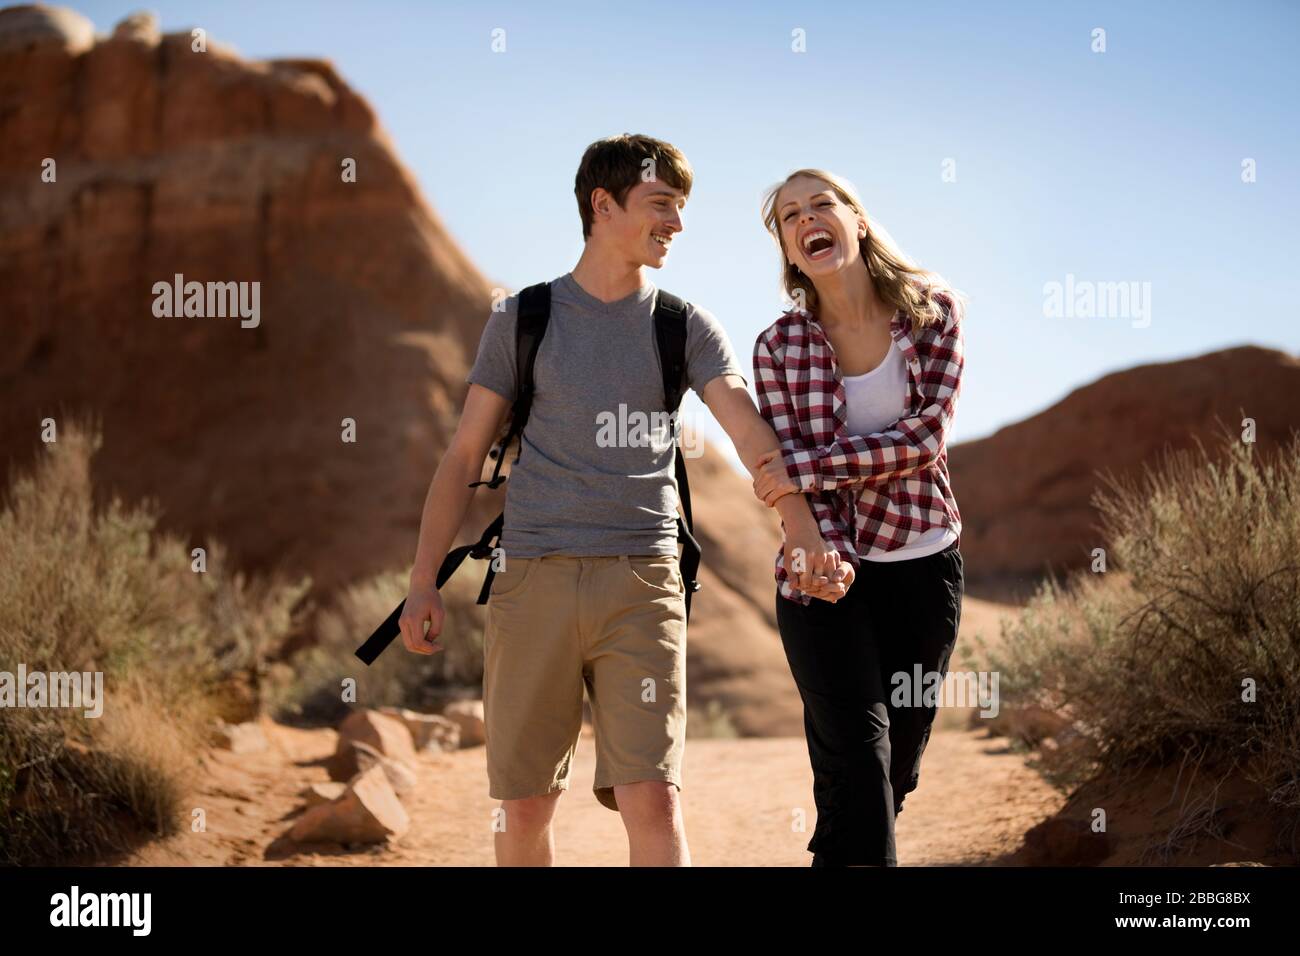 Lachende junge Frau, die sich mit ihrem Freund die Hände hält, während sie gemeinsam durch eine Wüste wandern Stockfoto